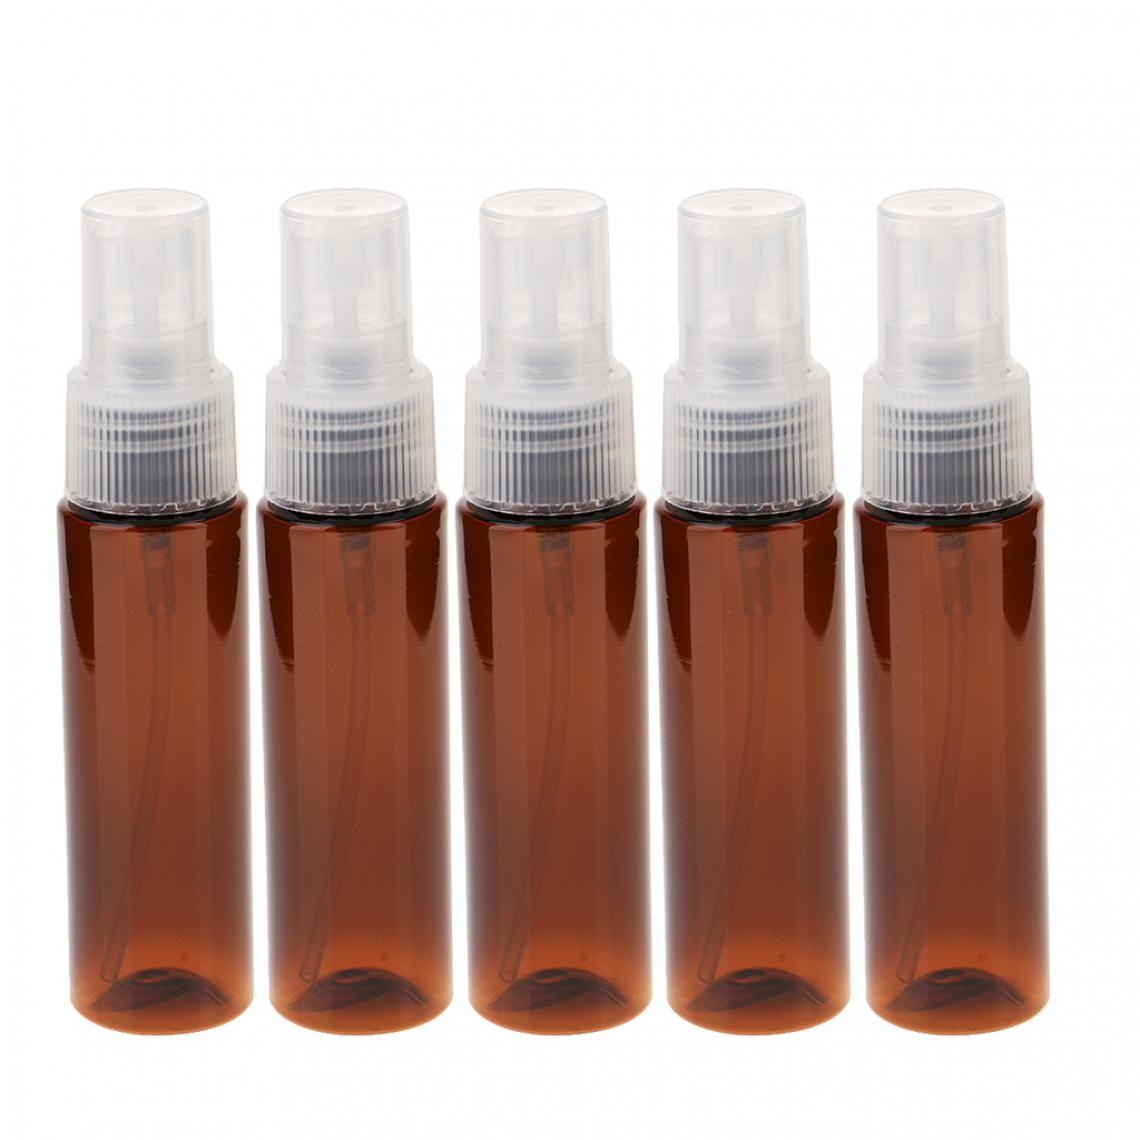 marque generique - 5pcs 30ml en plastique fine brume parfum lotion vaporisateur flacon recharge voyage marron - Maquillage et coiffure